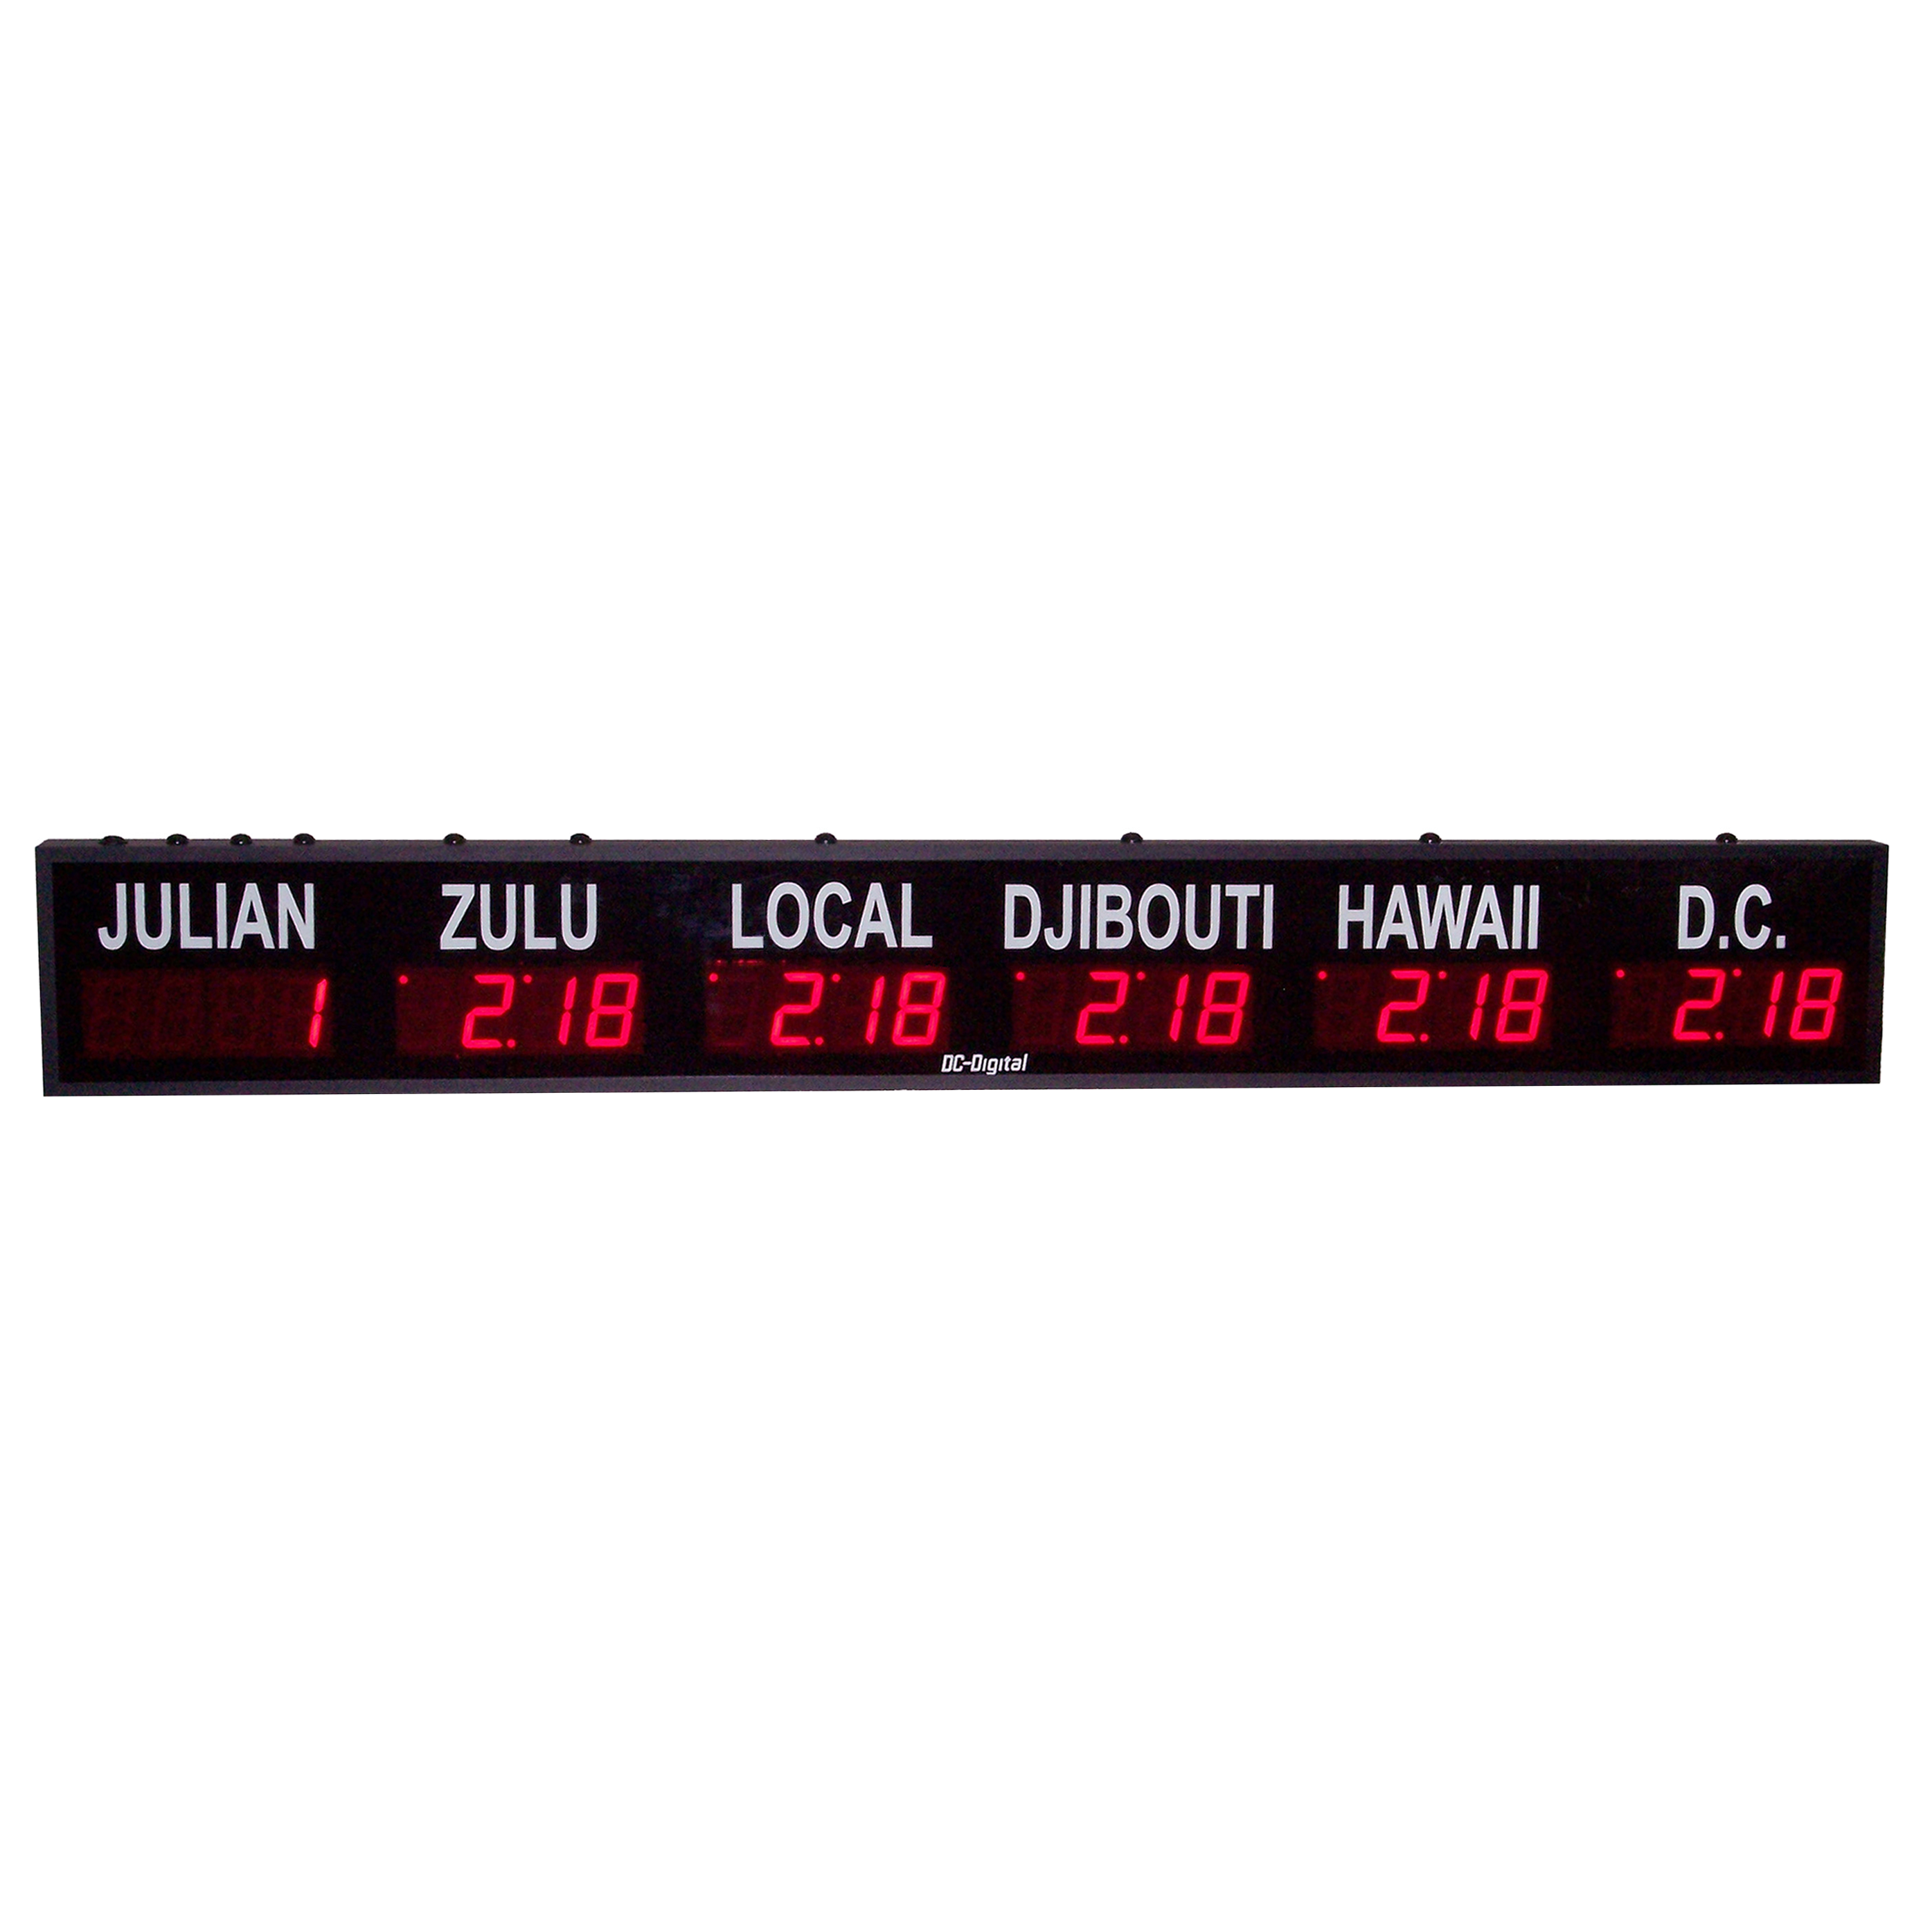 (DC-25TZ-5+Julian) 5- Zone + Julian Days, Customer Specific Vinyl Lettering, 2.3 inch Digit, World Time Zone Clocks